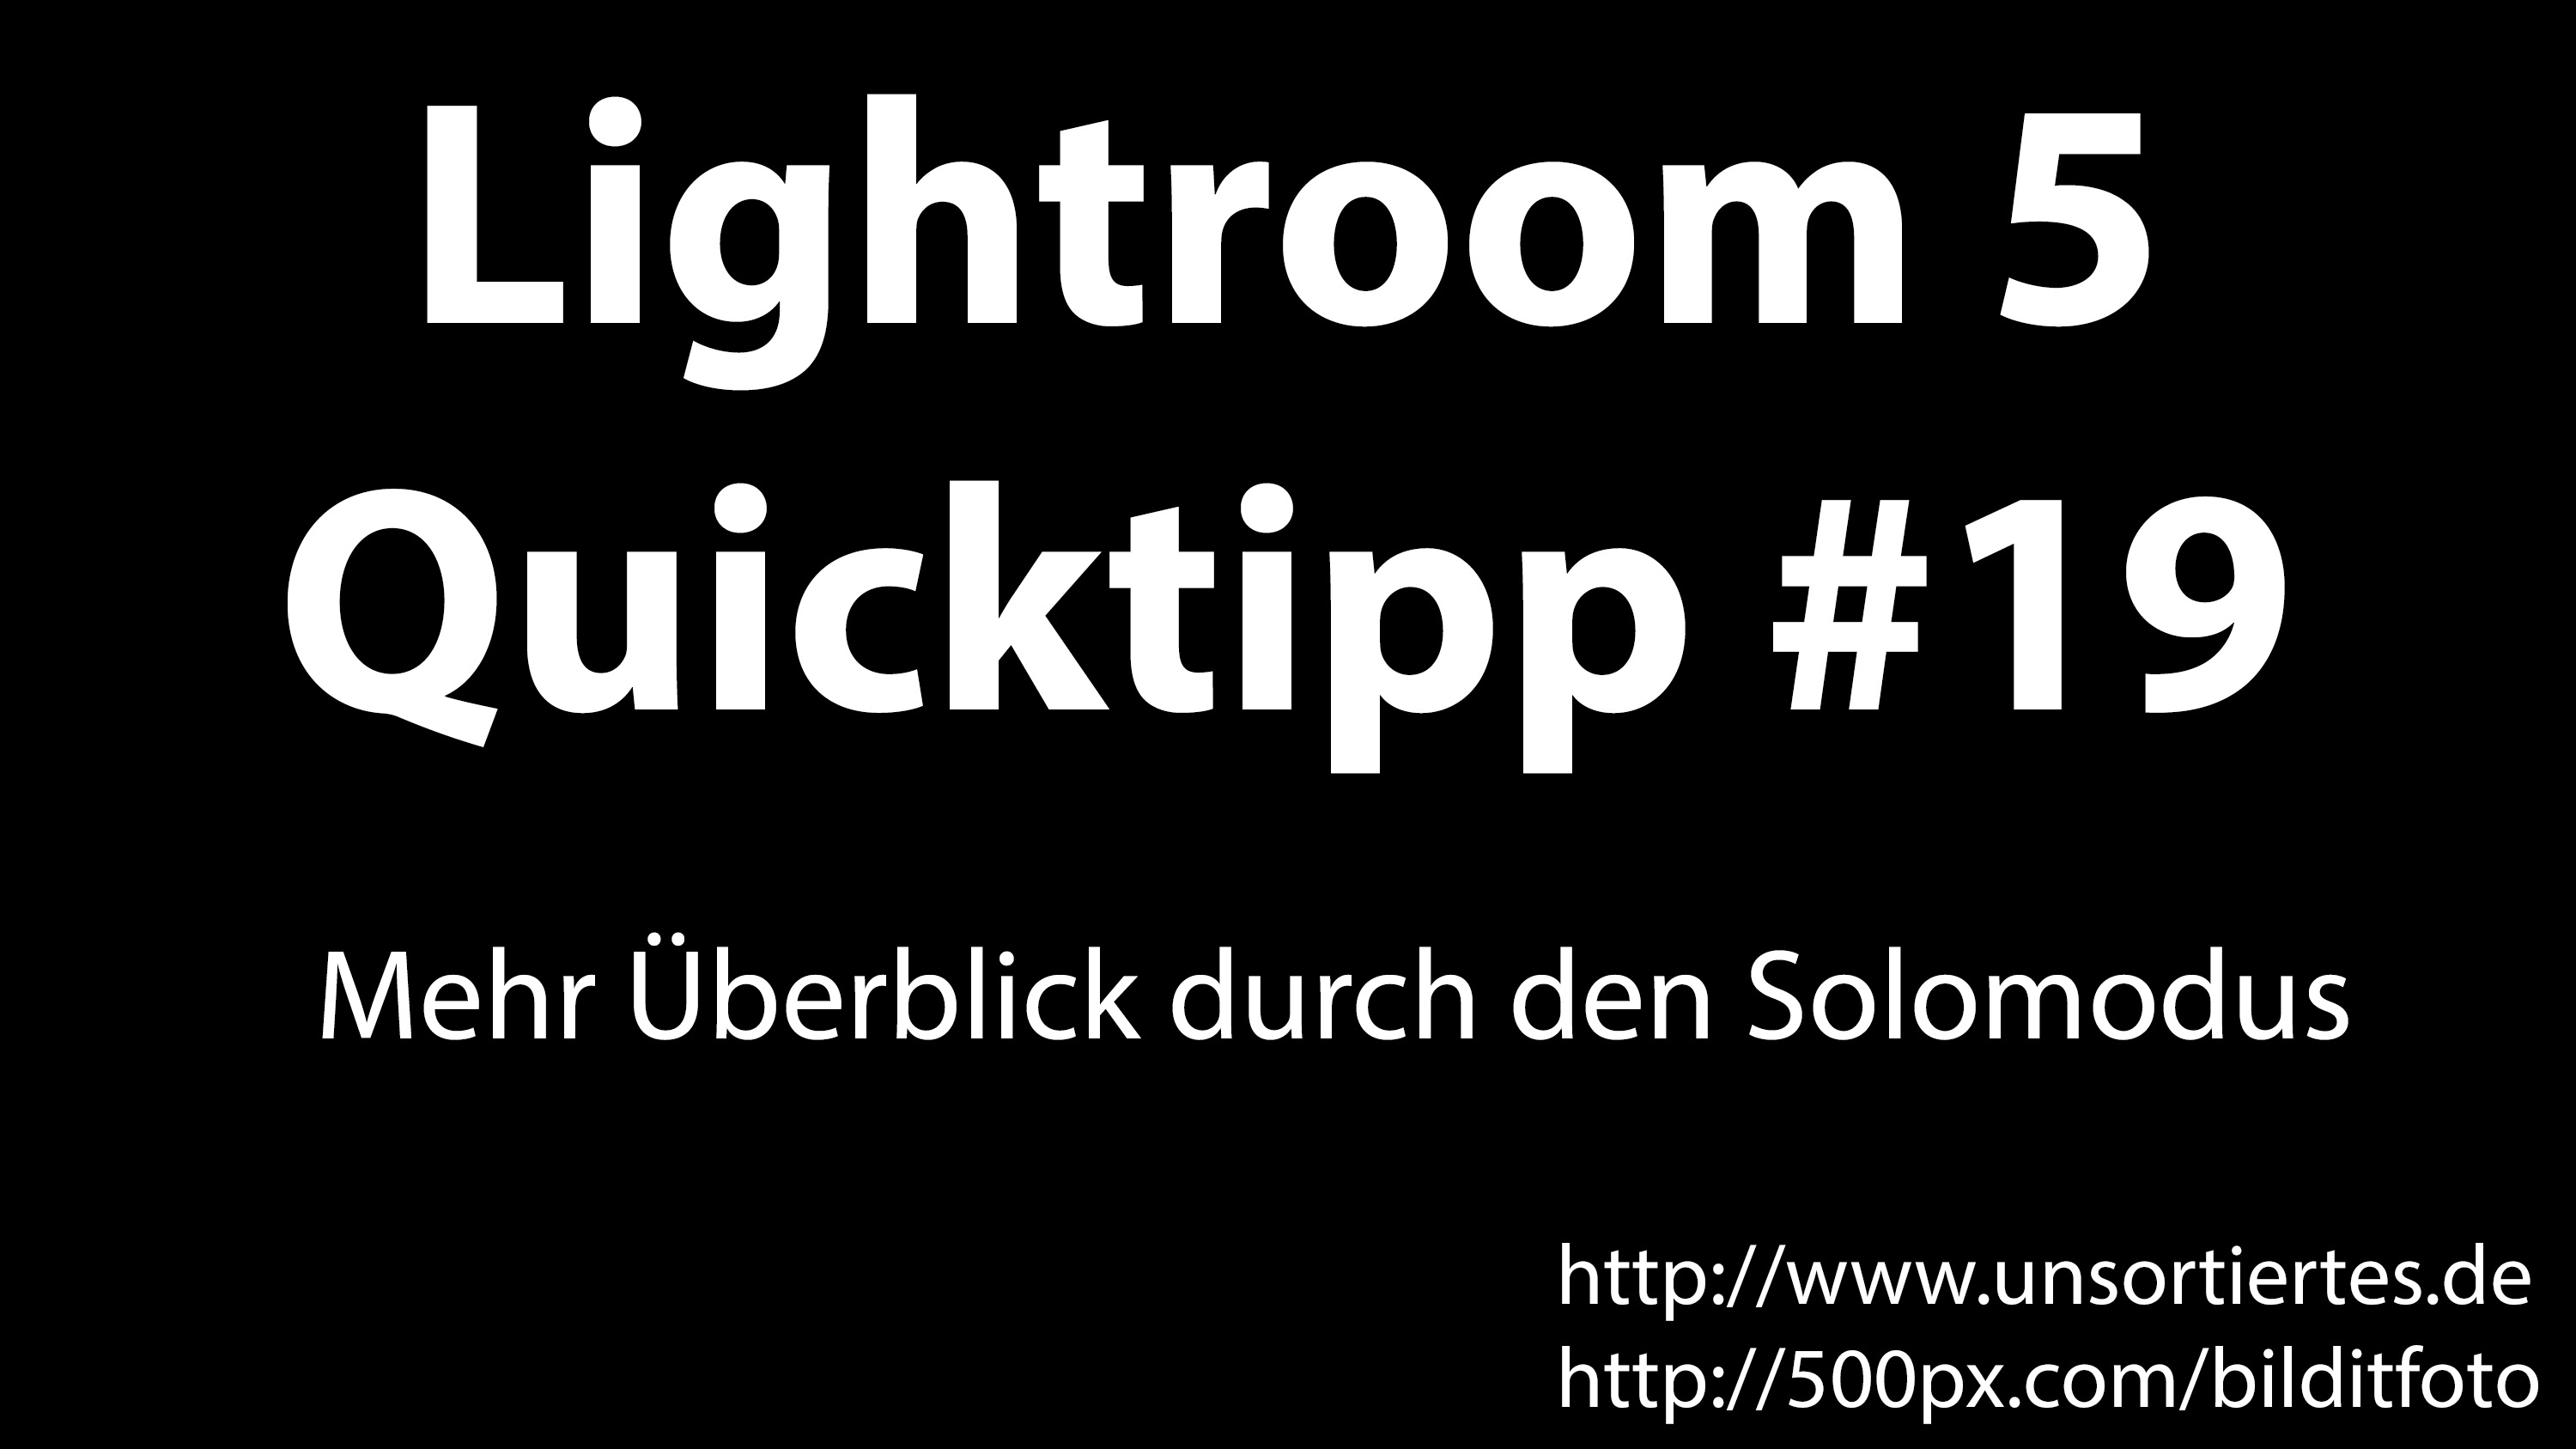 lightroom 5 quicktipp